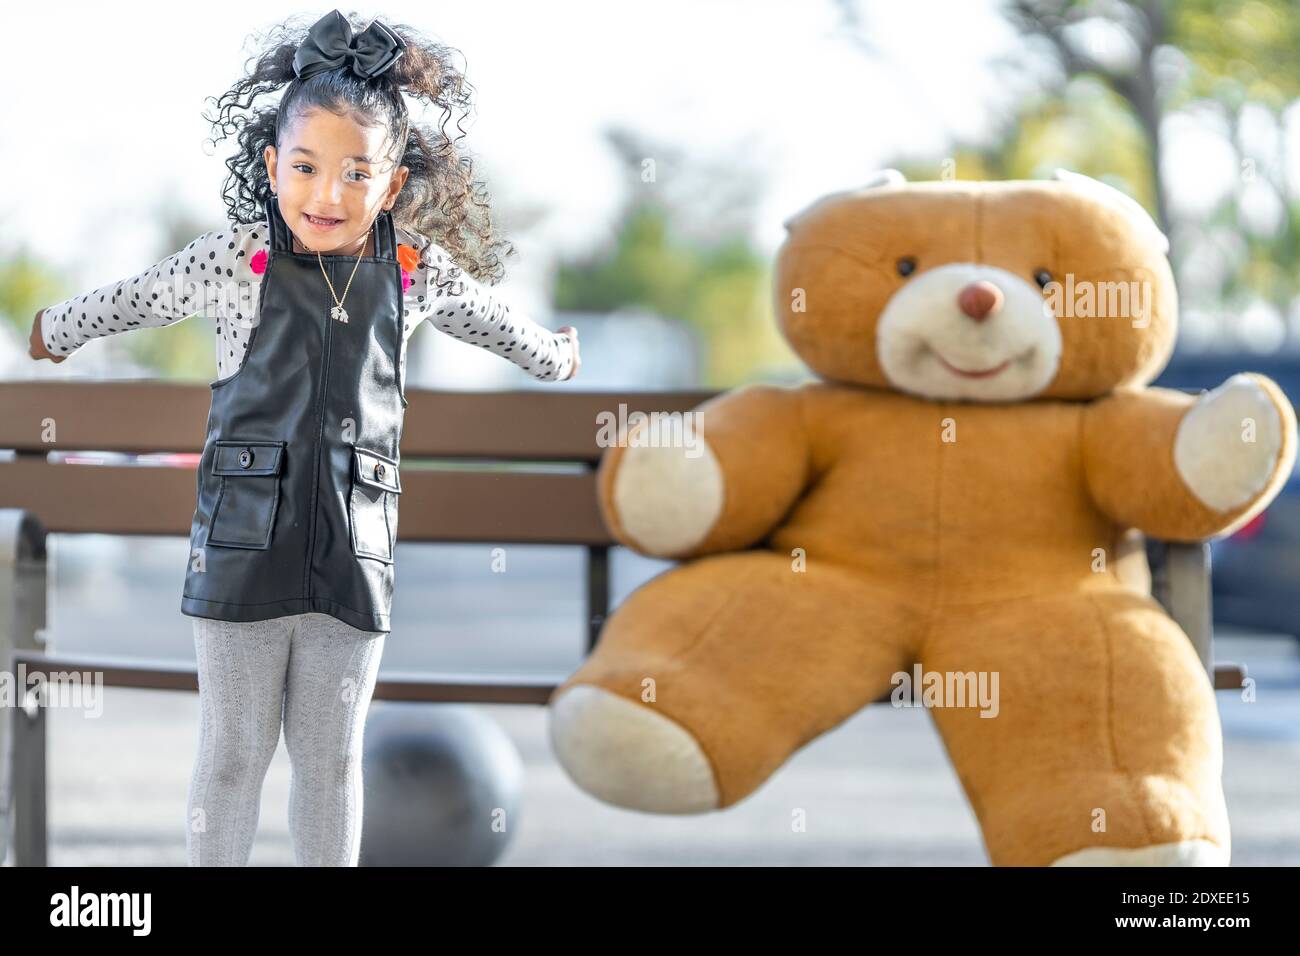 Une fille joueur sautant en jouant avec un ours en peluche sur un banc en arrière-plan Banque D'Images